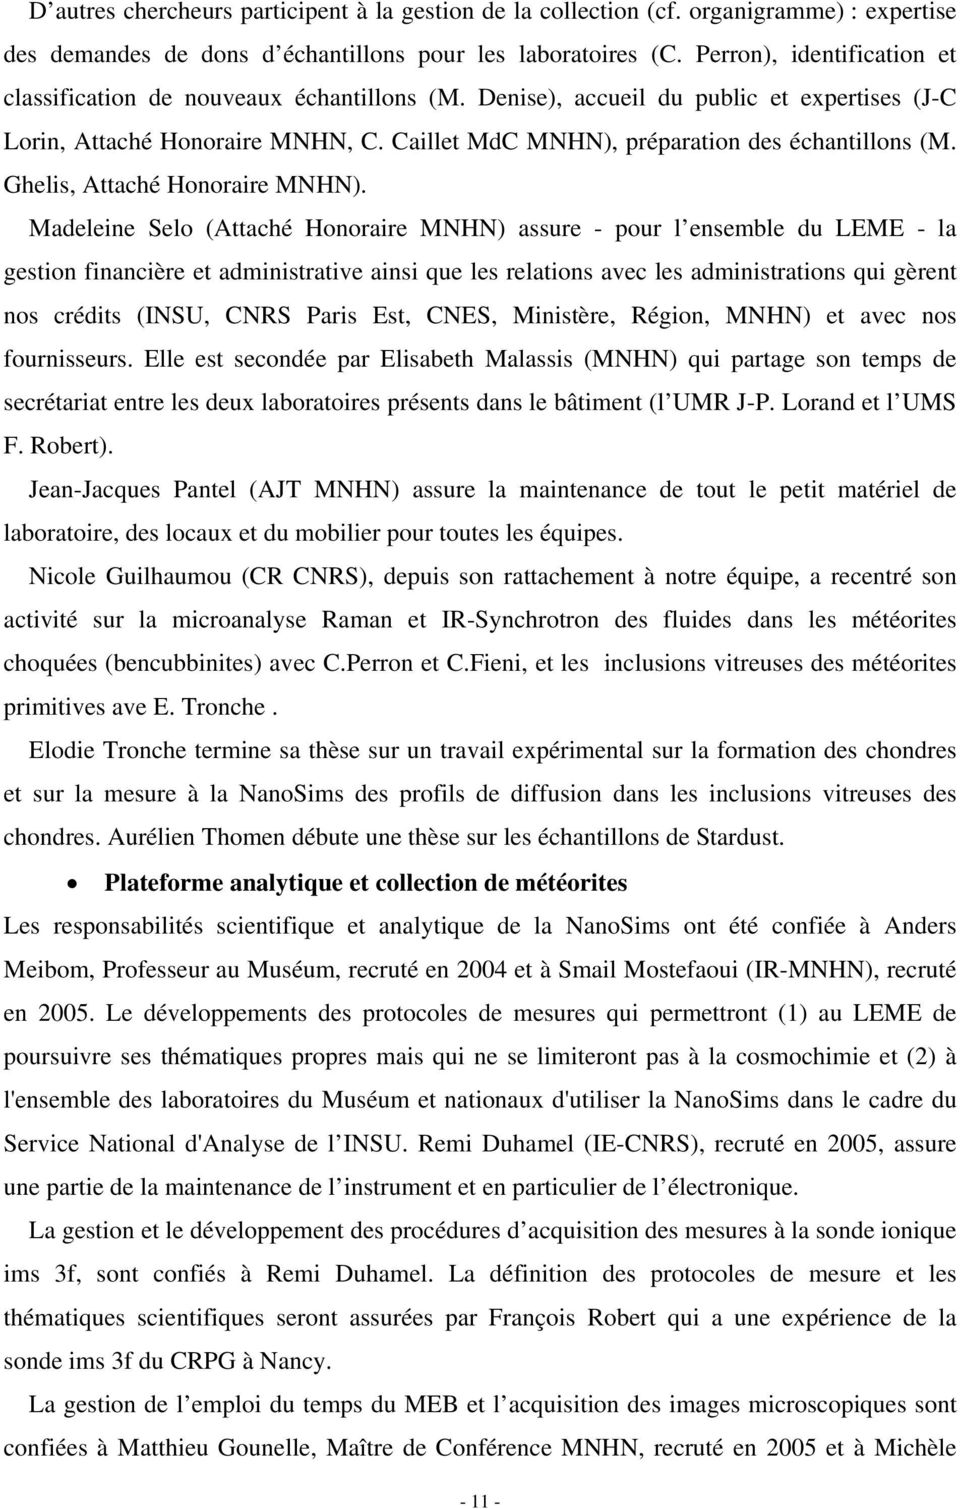 Caillet MdC MNHN), préparation des échantillons (M. Ghelis, Attaché Honoraire MNHN).